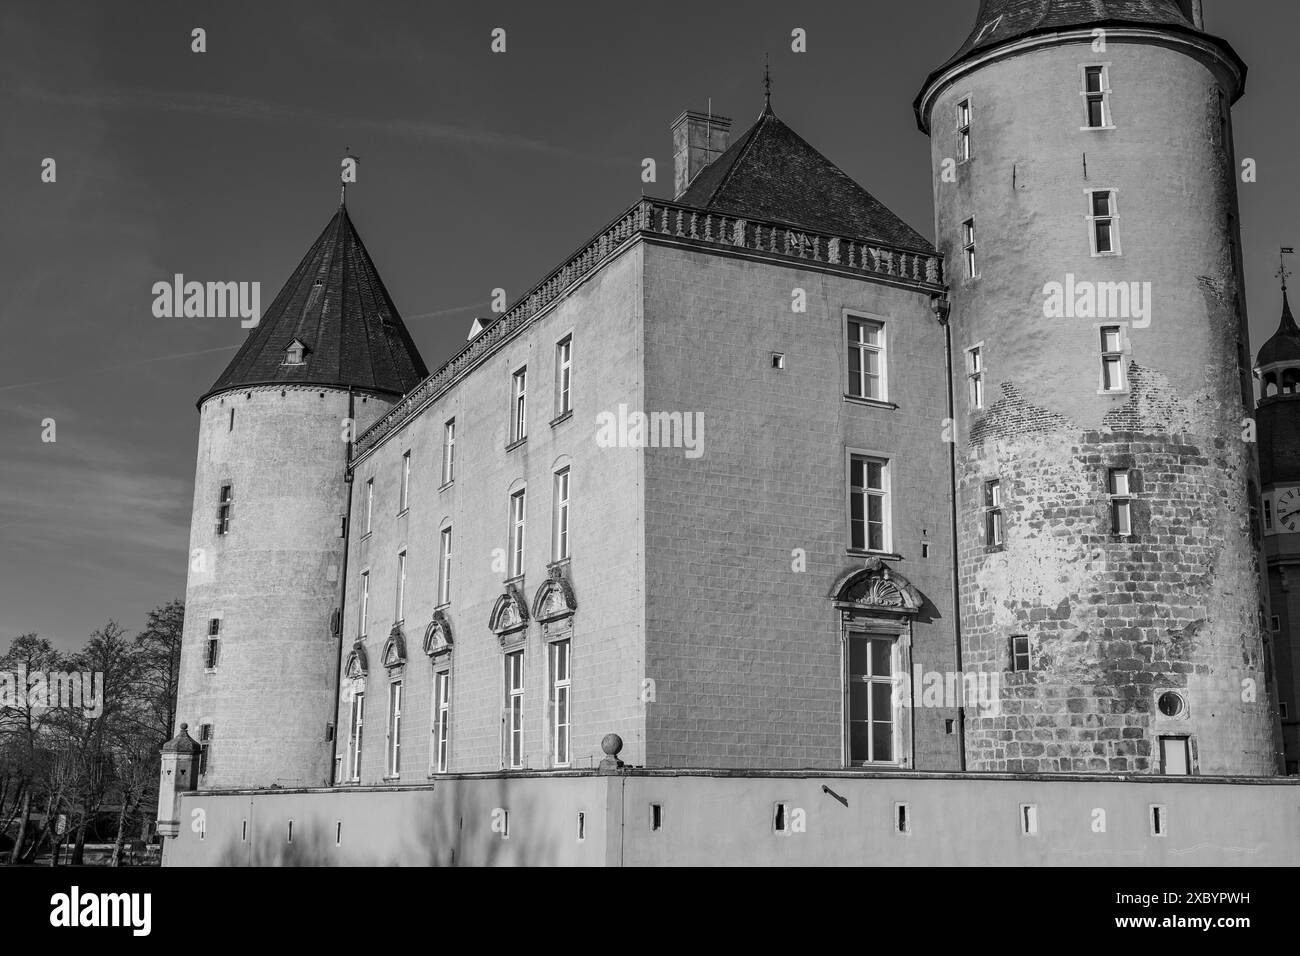 Photographie en noir et blanc d'un château historique avec des tours frappantes dans une atmosphère hivernale, Gemen, muensterland, allemagne Banque D'Images